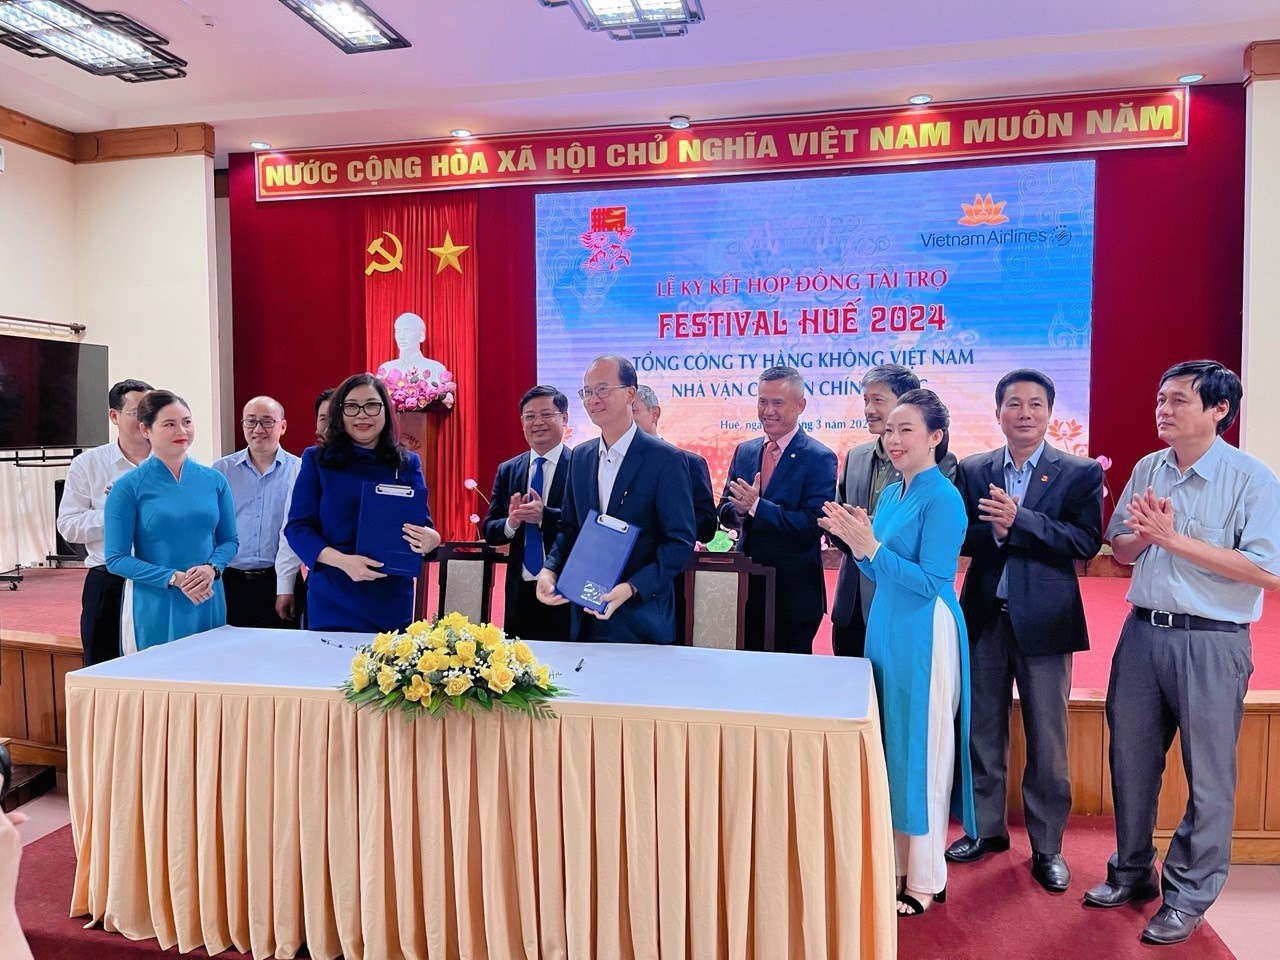 Đại diện Vietnam Airlines và Ban tổ chức Festival Huế  tại lễ ký hợp đồng tài trợ